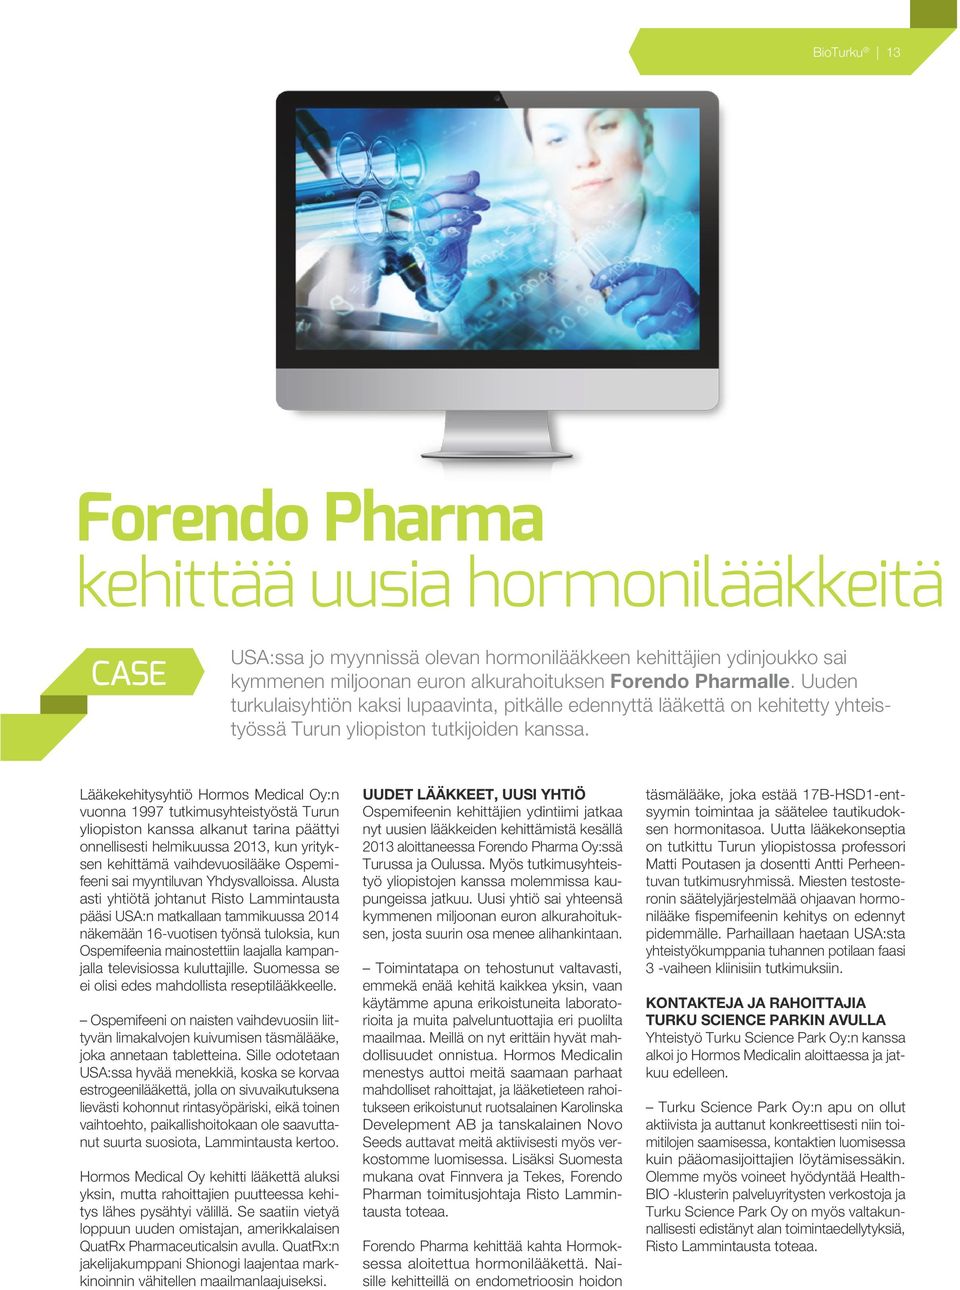 Lääkekehitysyhtiö Hormos Medical Oy:n vuonna 1997 tutkimusyhteistyöstä Turun yliopiston kanssa alkanut tarina päättyi onnellisesti helmikuussa 2013, kun yrityksen kehittämä vaihdevuosilääke